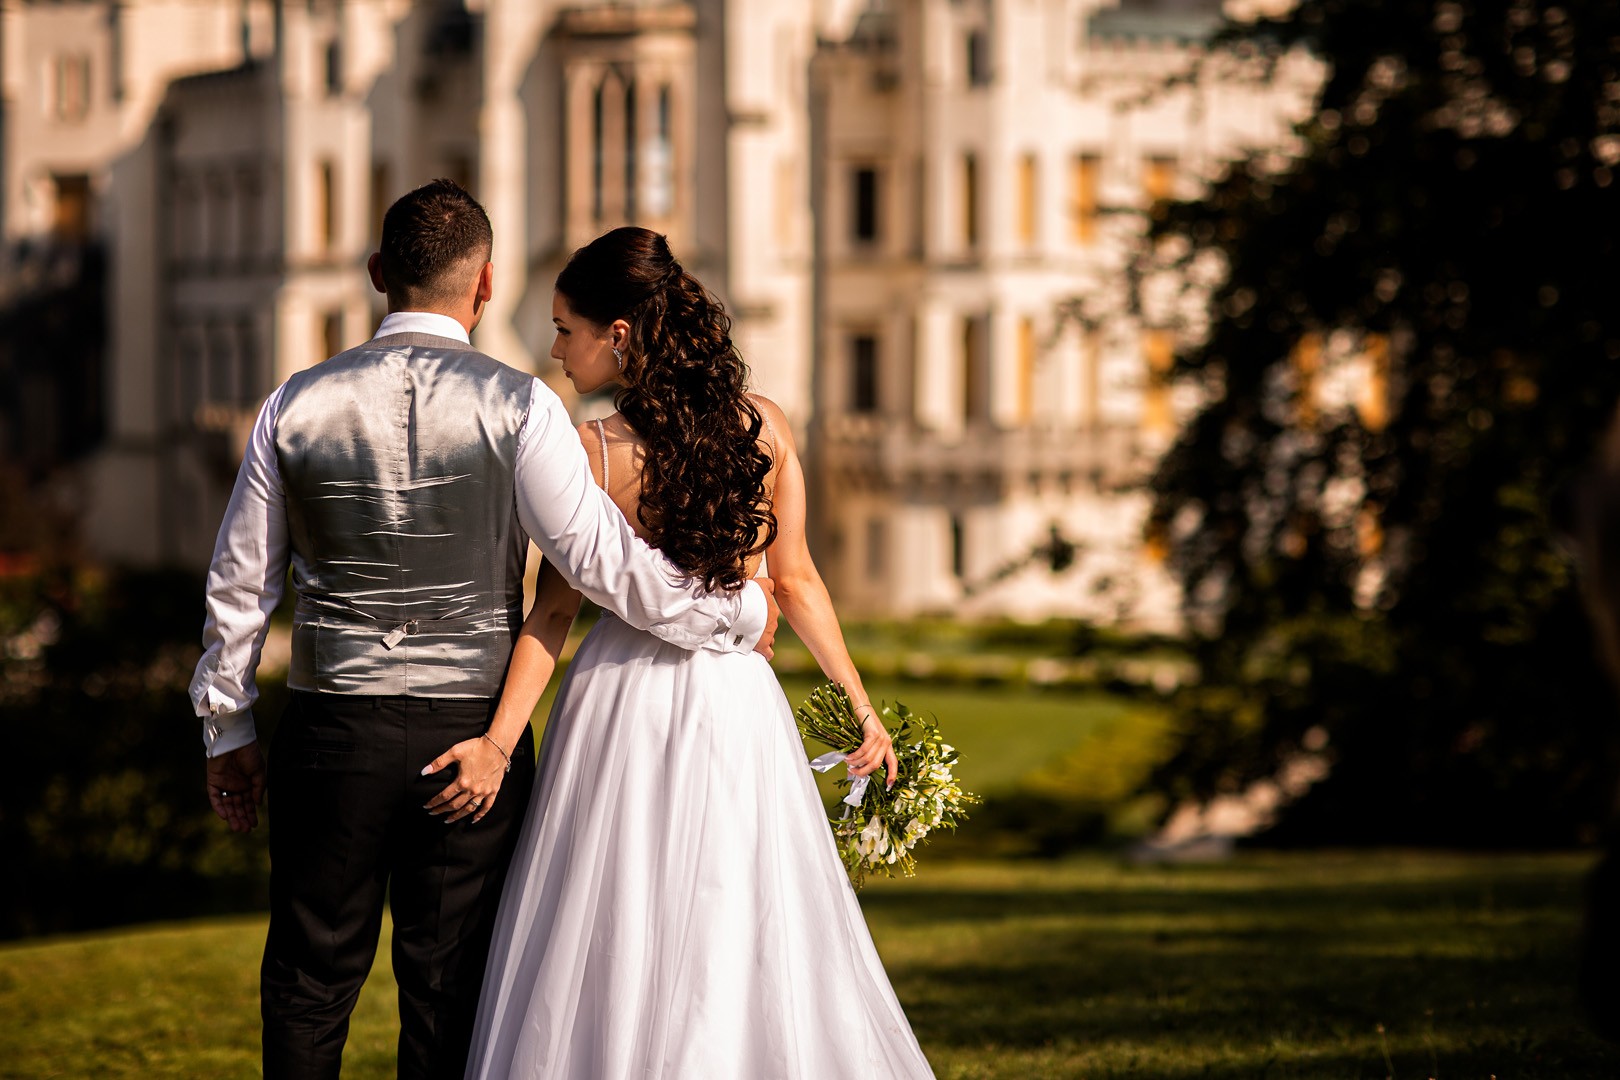 Picturesque dream wedding of Kloudy & Michal in Hluboká nad Vltavou. - 0390.jpg